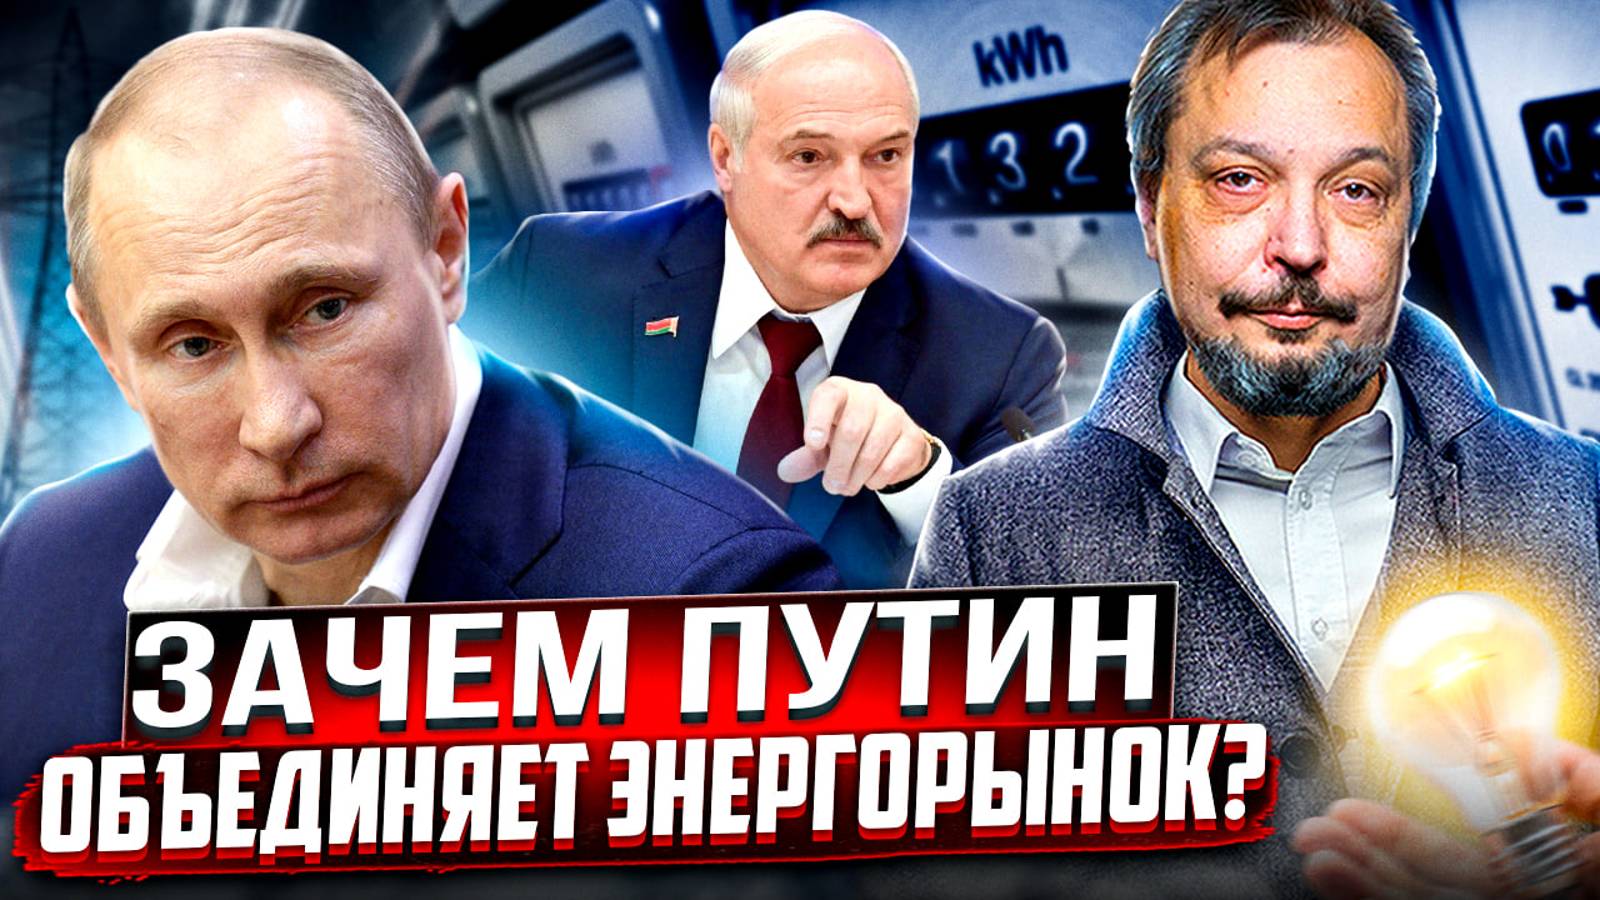 Общий свет: зачем Путин объединяет Энергорынок России и Беларуси?